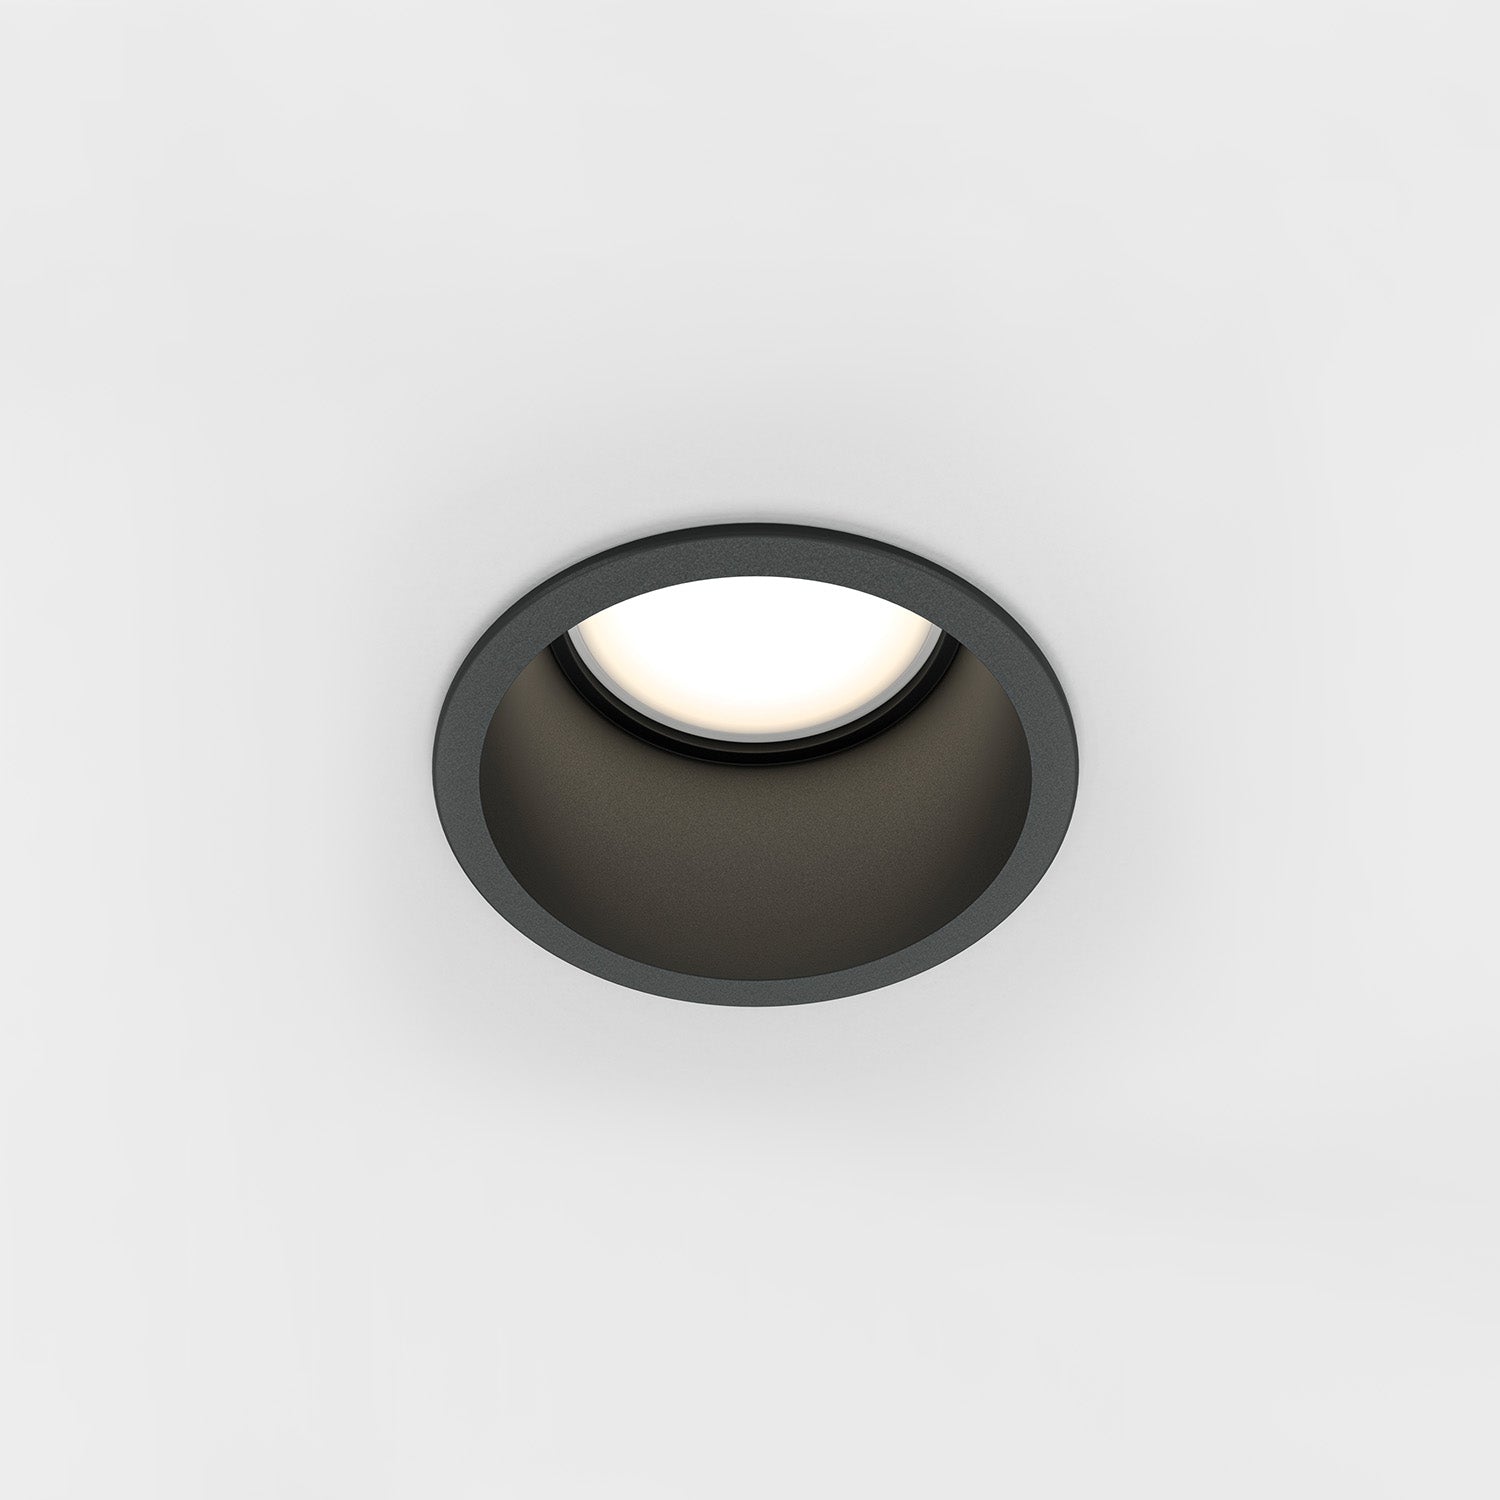 REIF – Designer-Einbaustrahler rund, schwarz, weiß oder gold, 68 mm